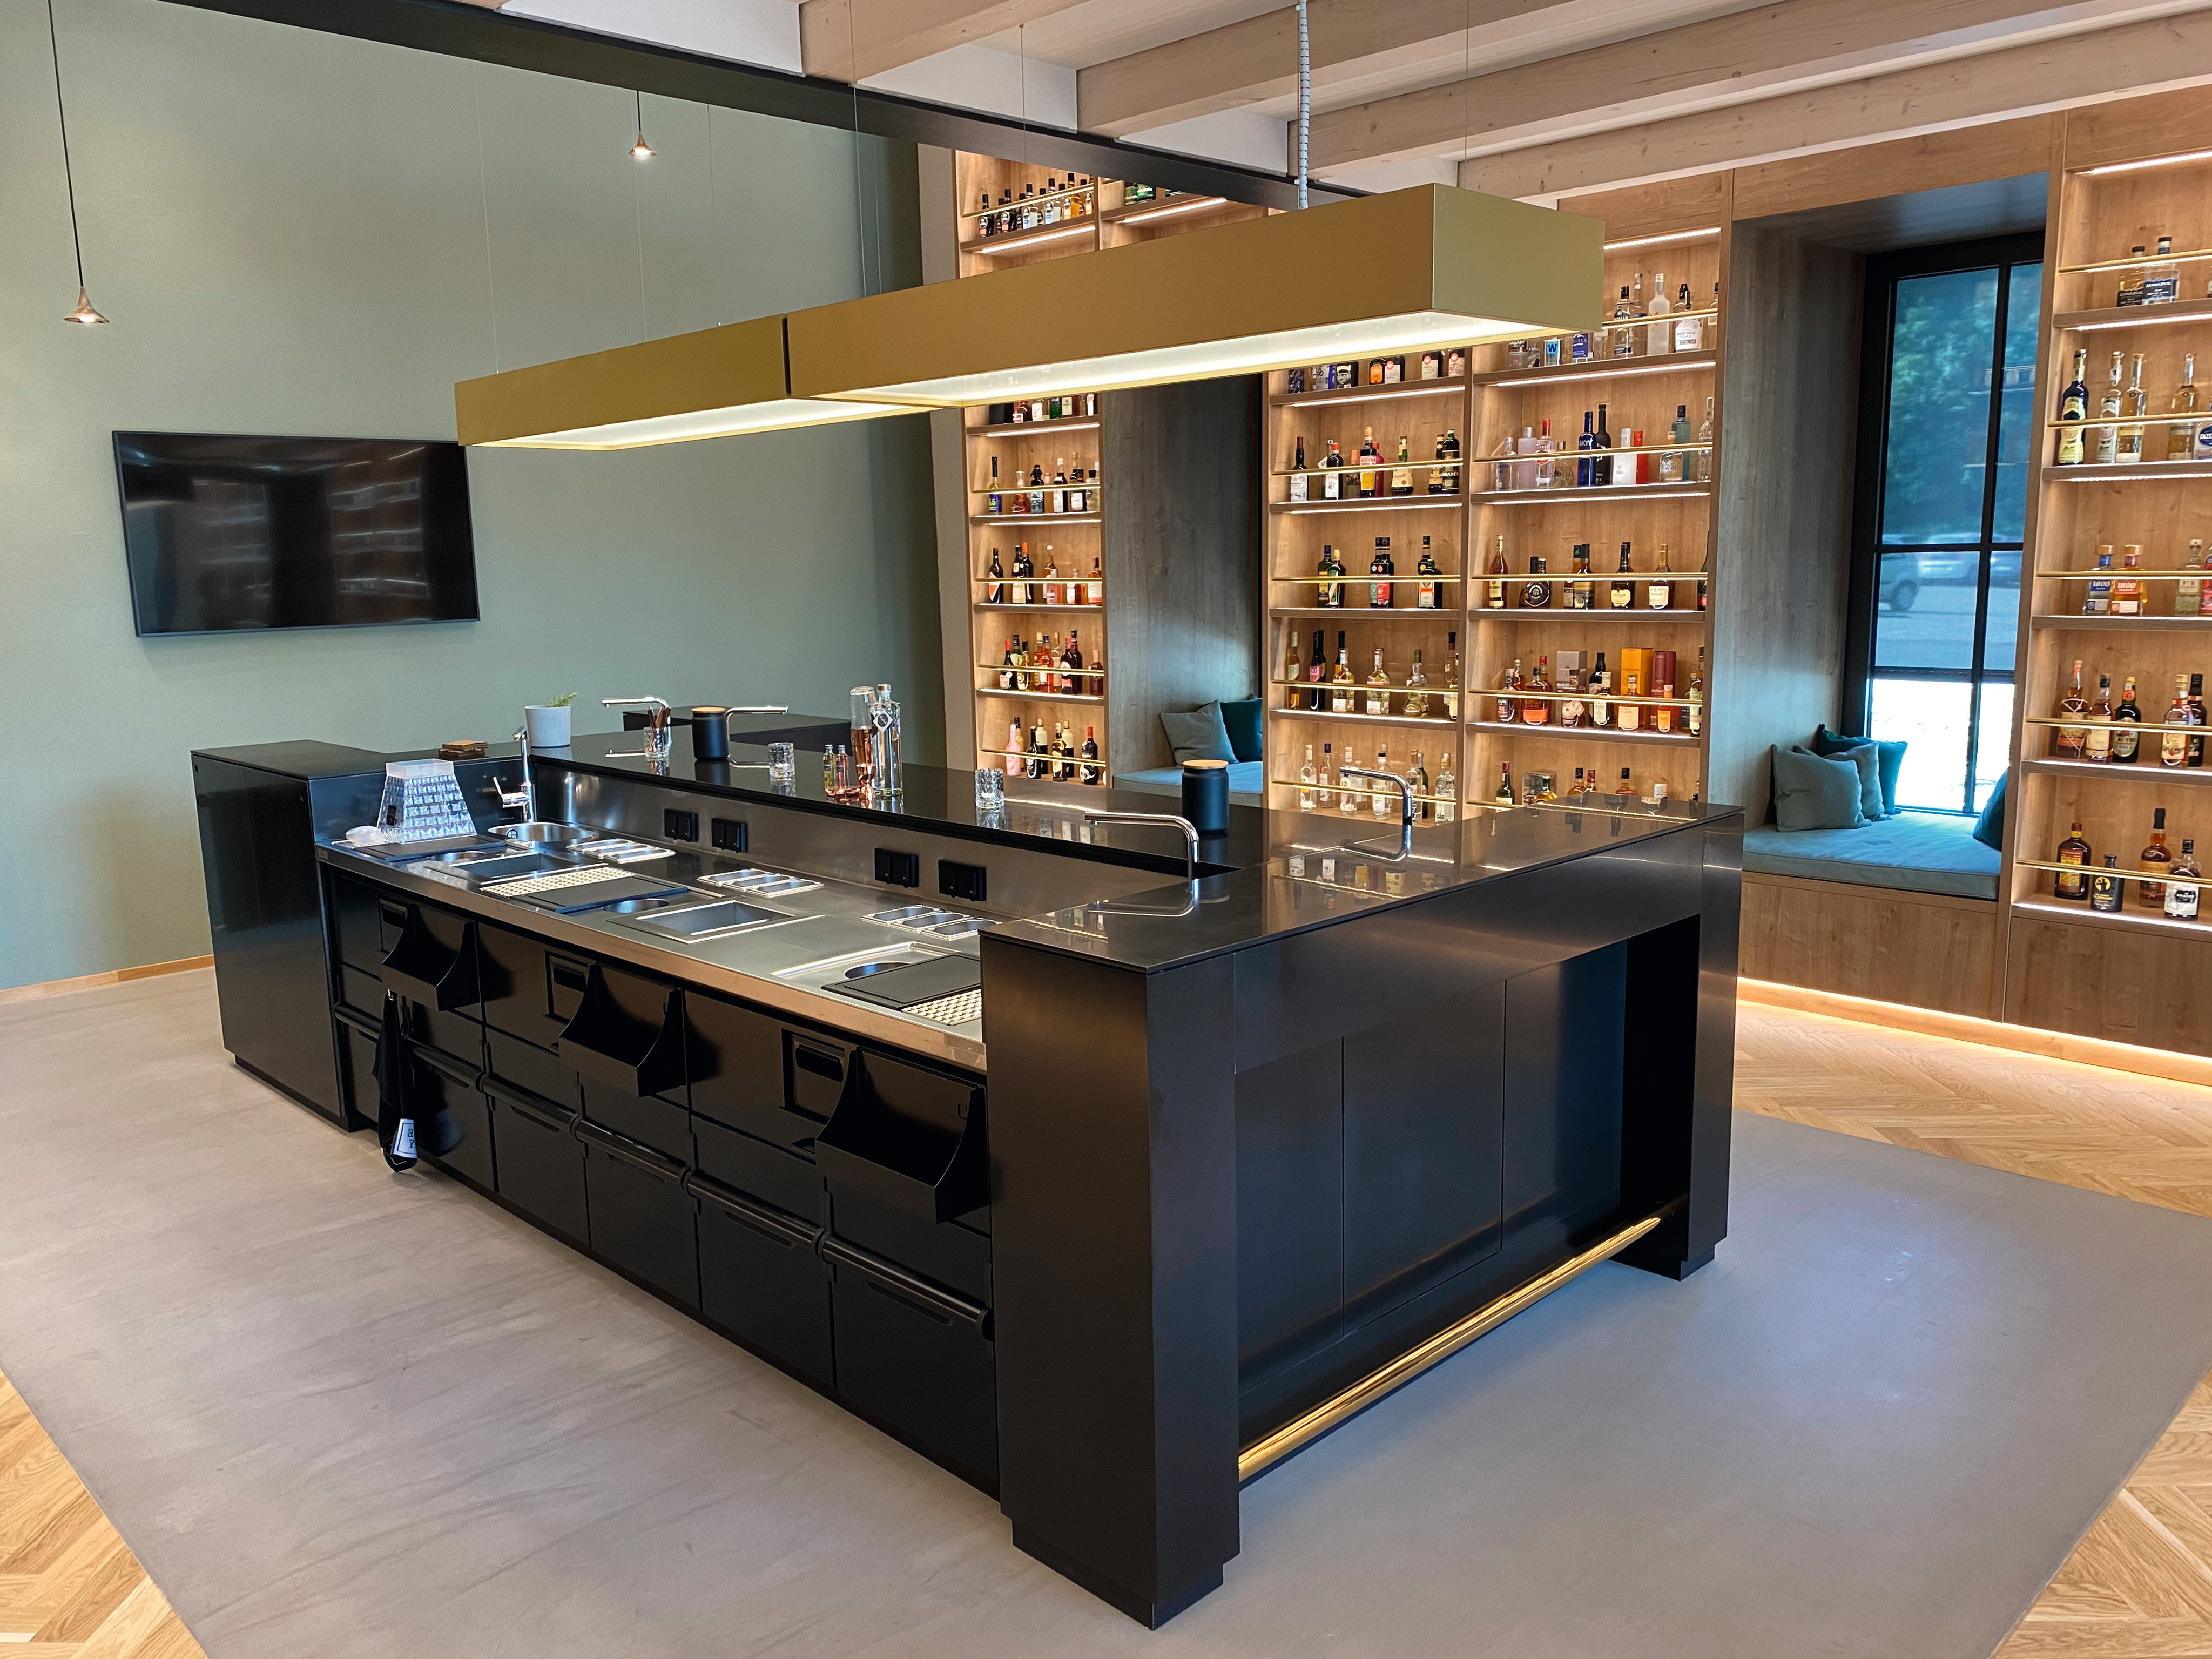 O balcão de bar, numa cor preta moderna, combina perfeitamente com o décor acolhedor H3303 ST10 Carvalho Hamilton natural das prateleiras de parede.